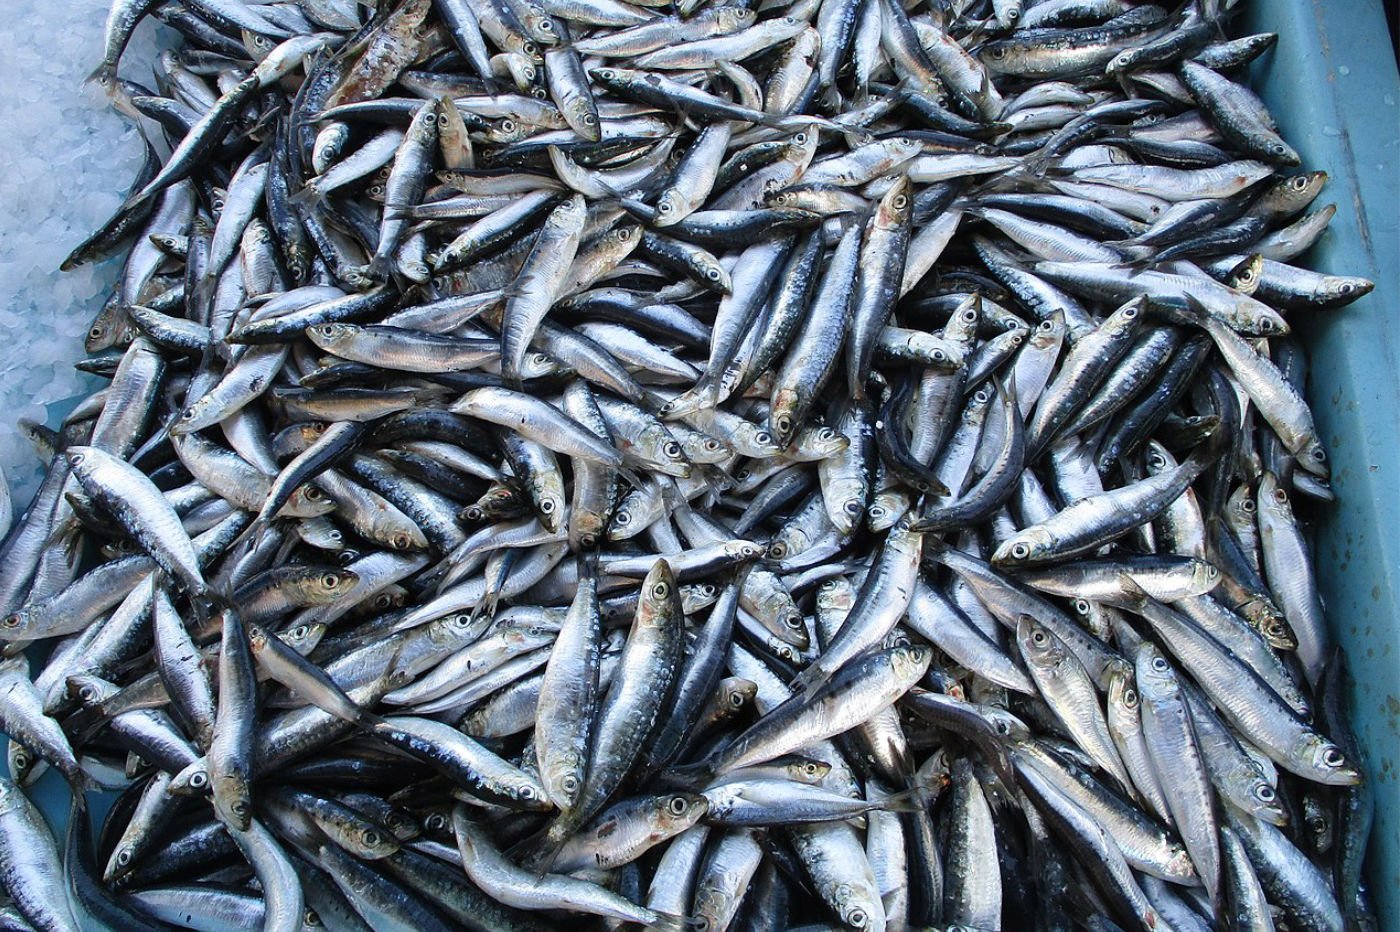 Recherche scientifique : pourquoi les sardines rétrécissent-elles ?